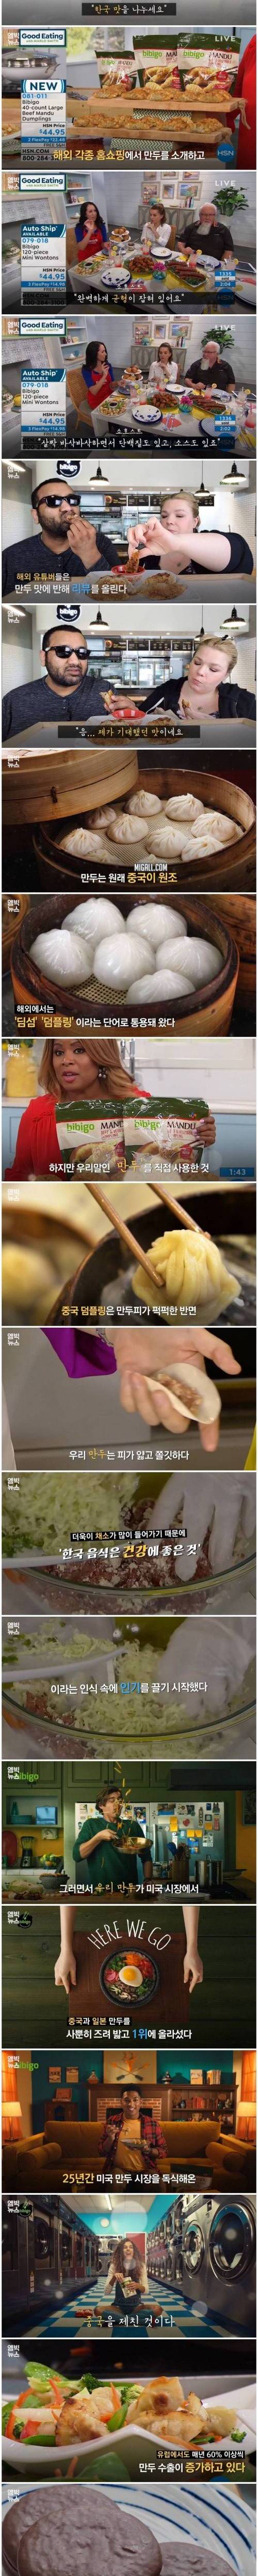 [스압] 전 세계에서 큰 인기를 끌고 있는 한국 만두.jpg